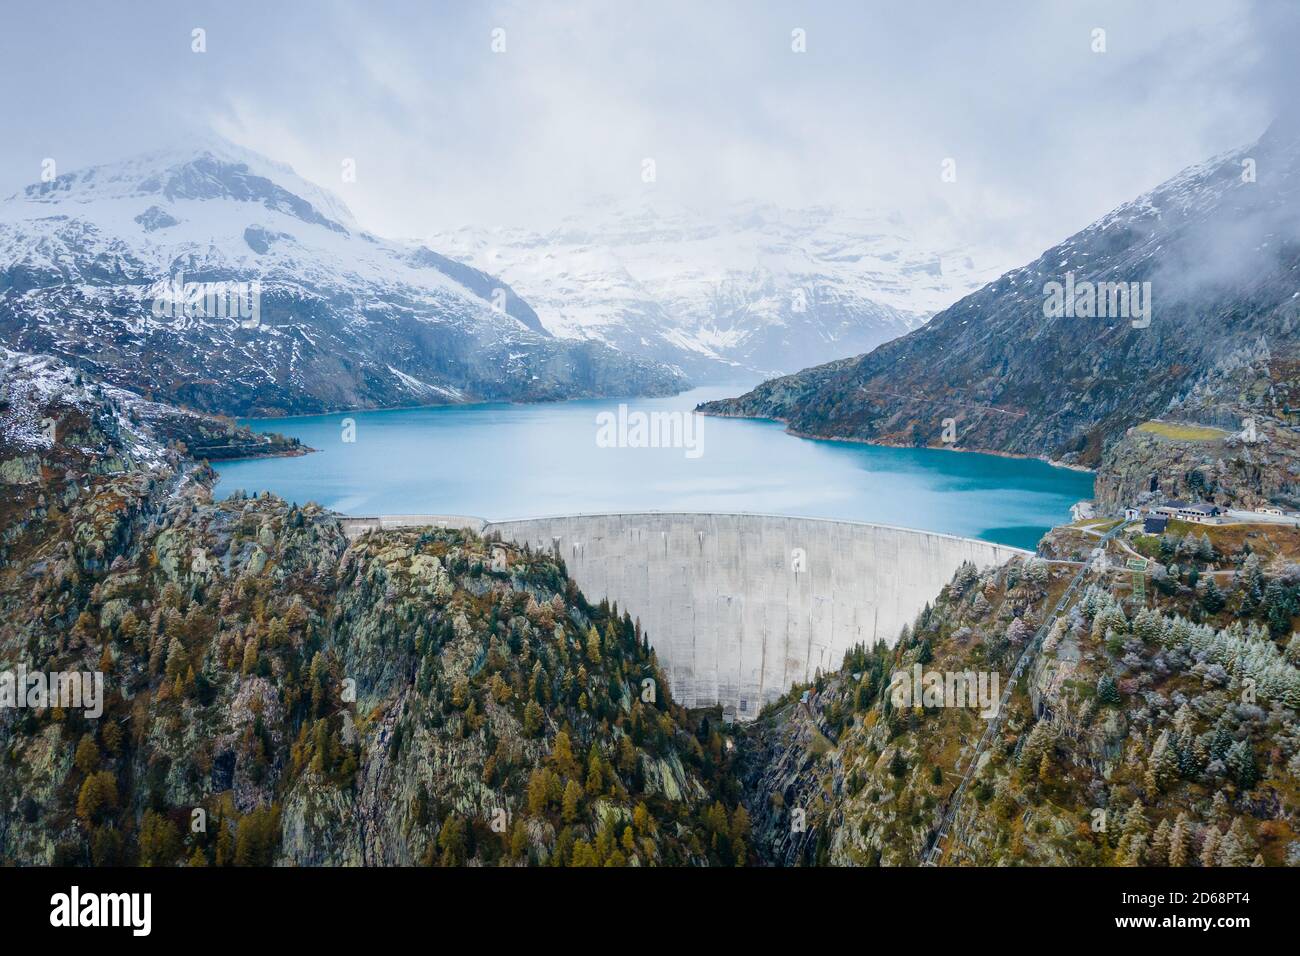 Idroelettricità generata da diga ad arco e lago artificiale nelle montagne innevate delle Alpi svizzere per produrre energia rinnovabile, idroelettricità sostenibile, Foto Stock